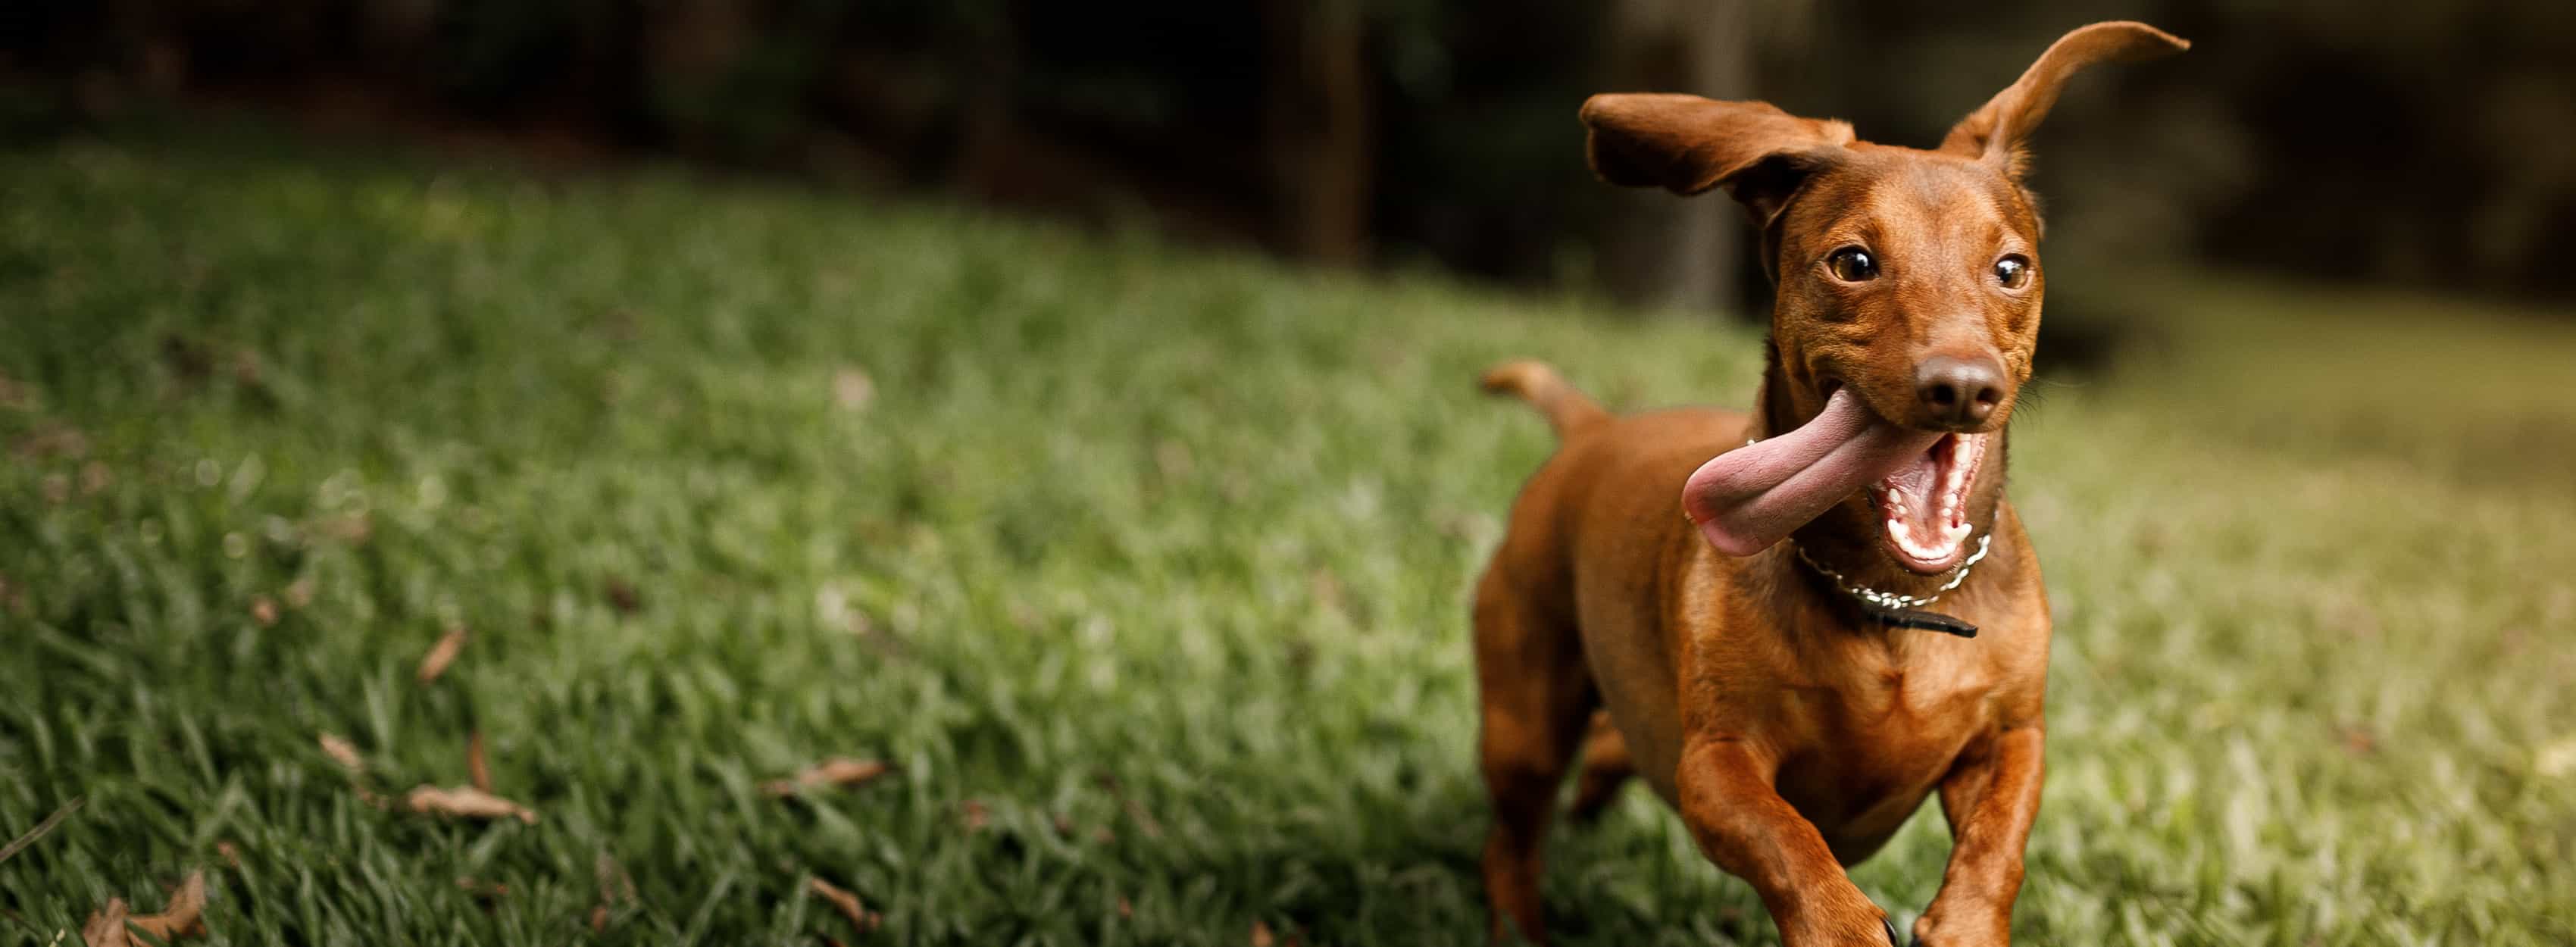 Un perro salchicha marrón corriendo con la lengua fuera.